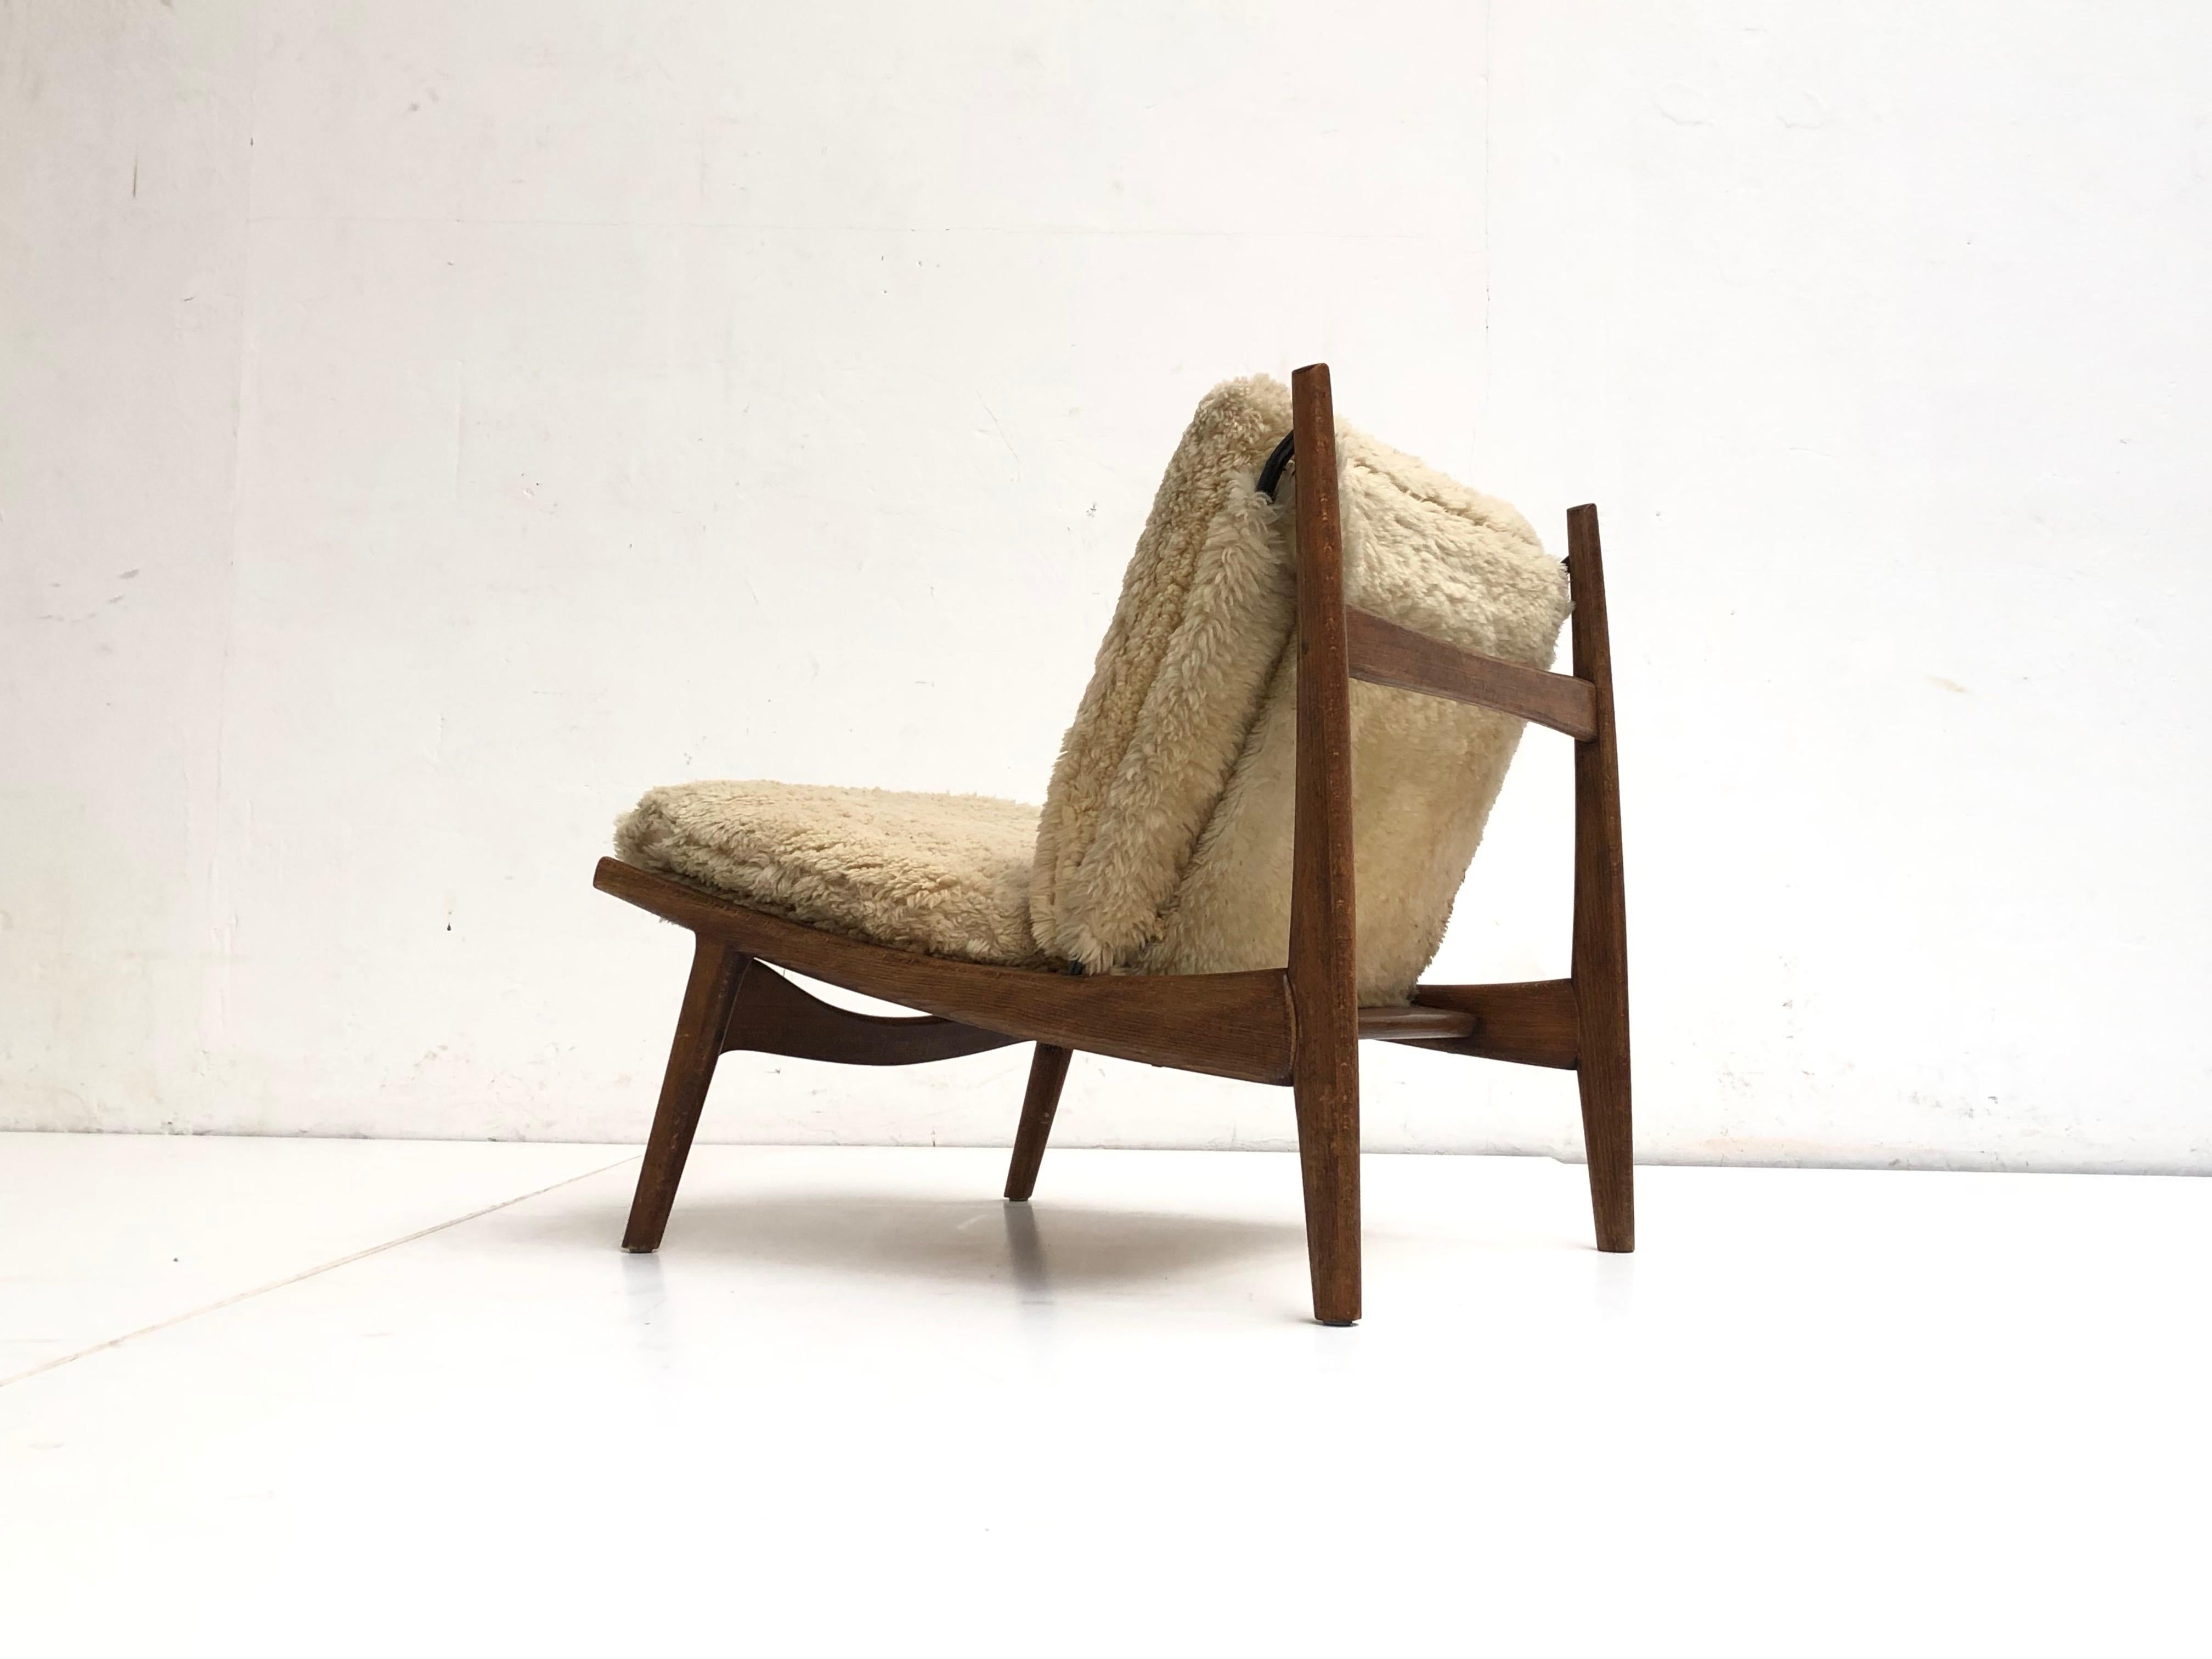 Cuir de mouton Superbe chaise longue '790' de forme organique par J.A Motte pour Steiner:: France:: 1960